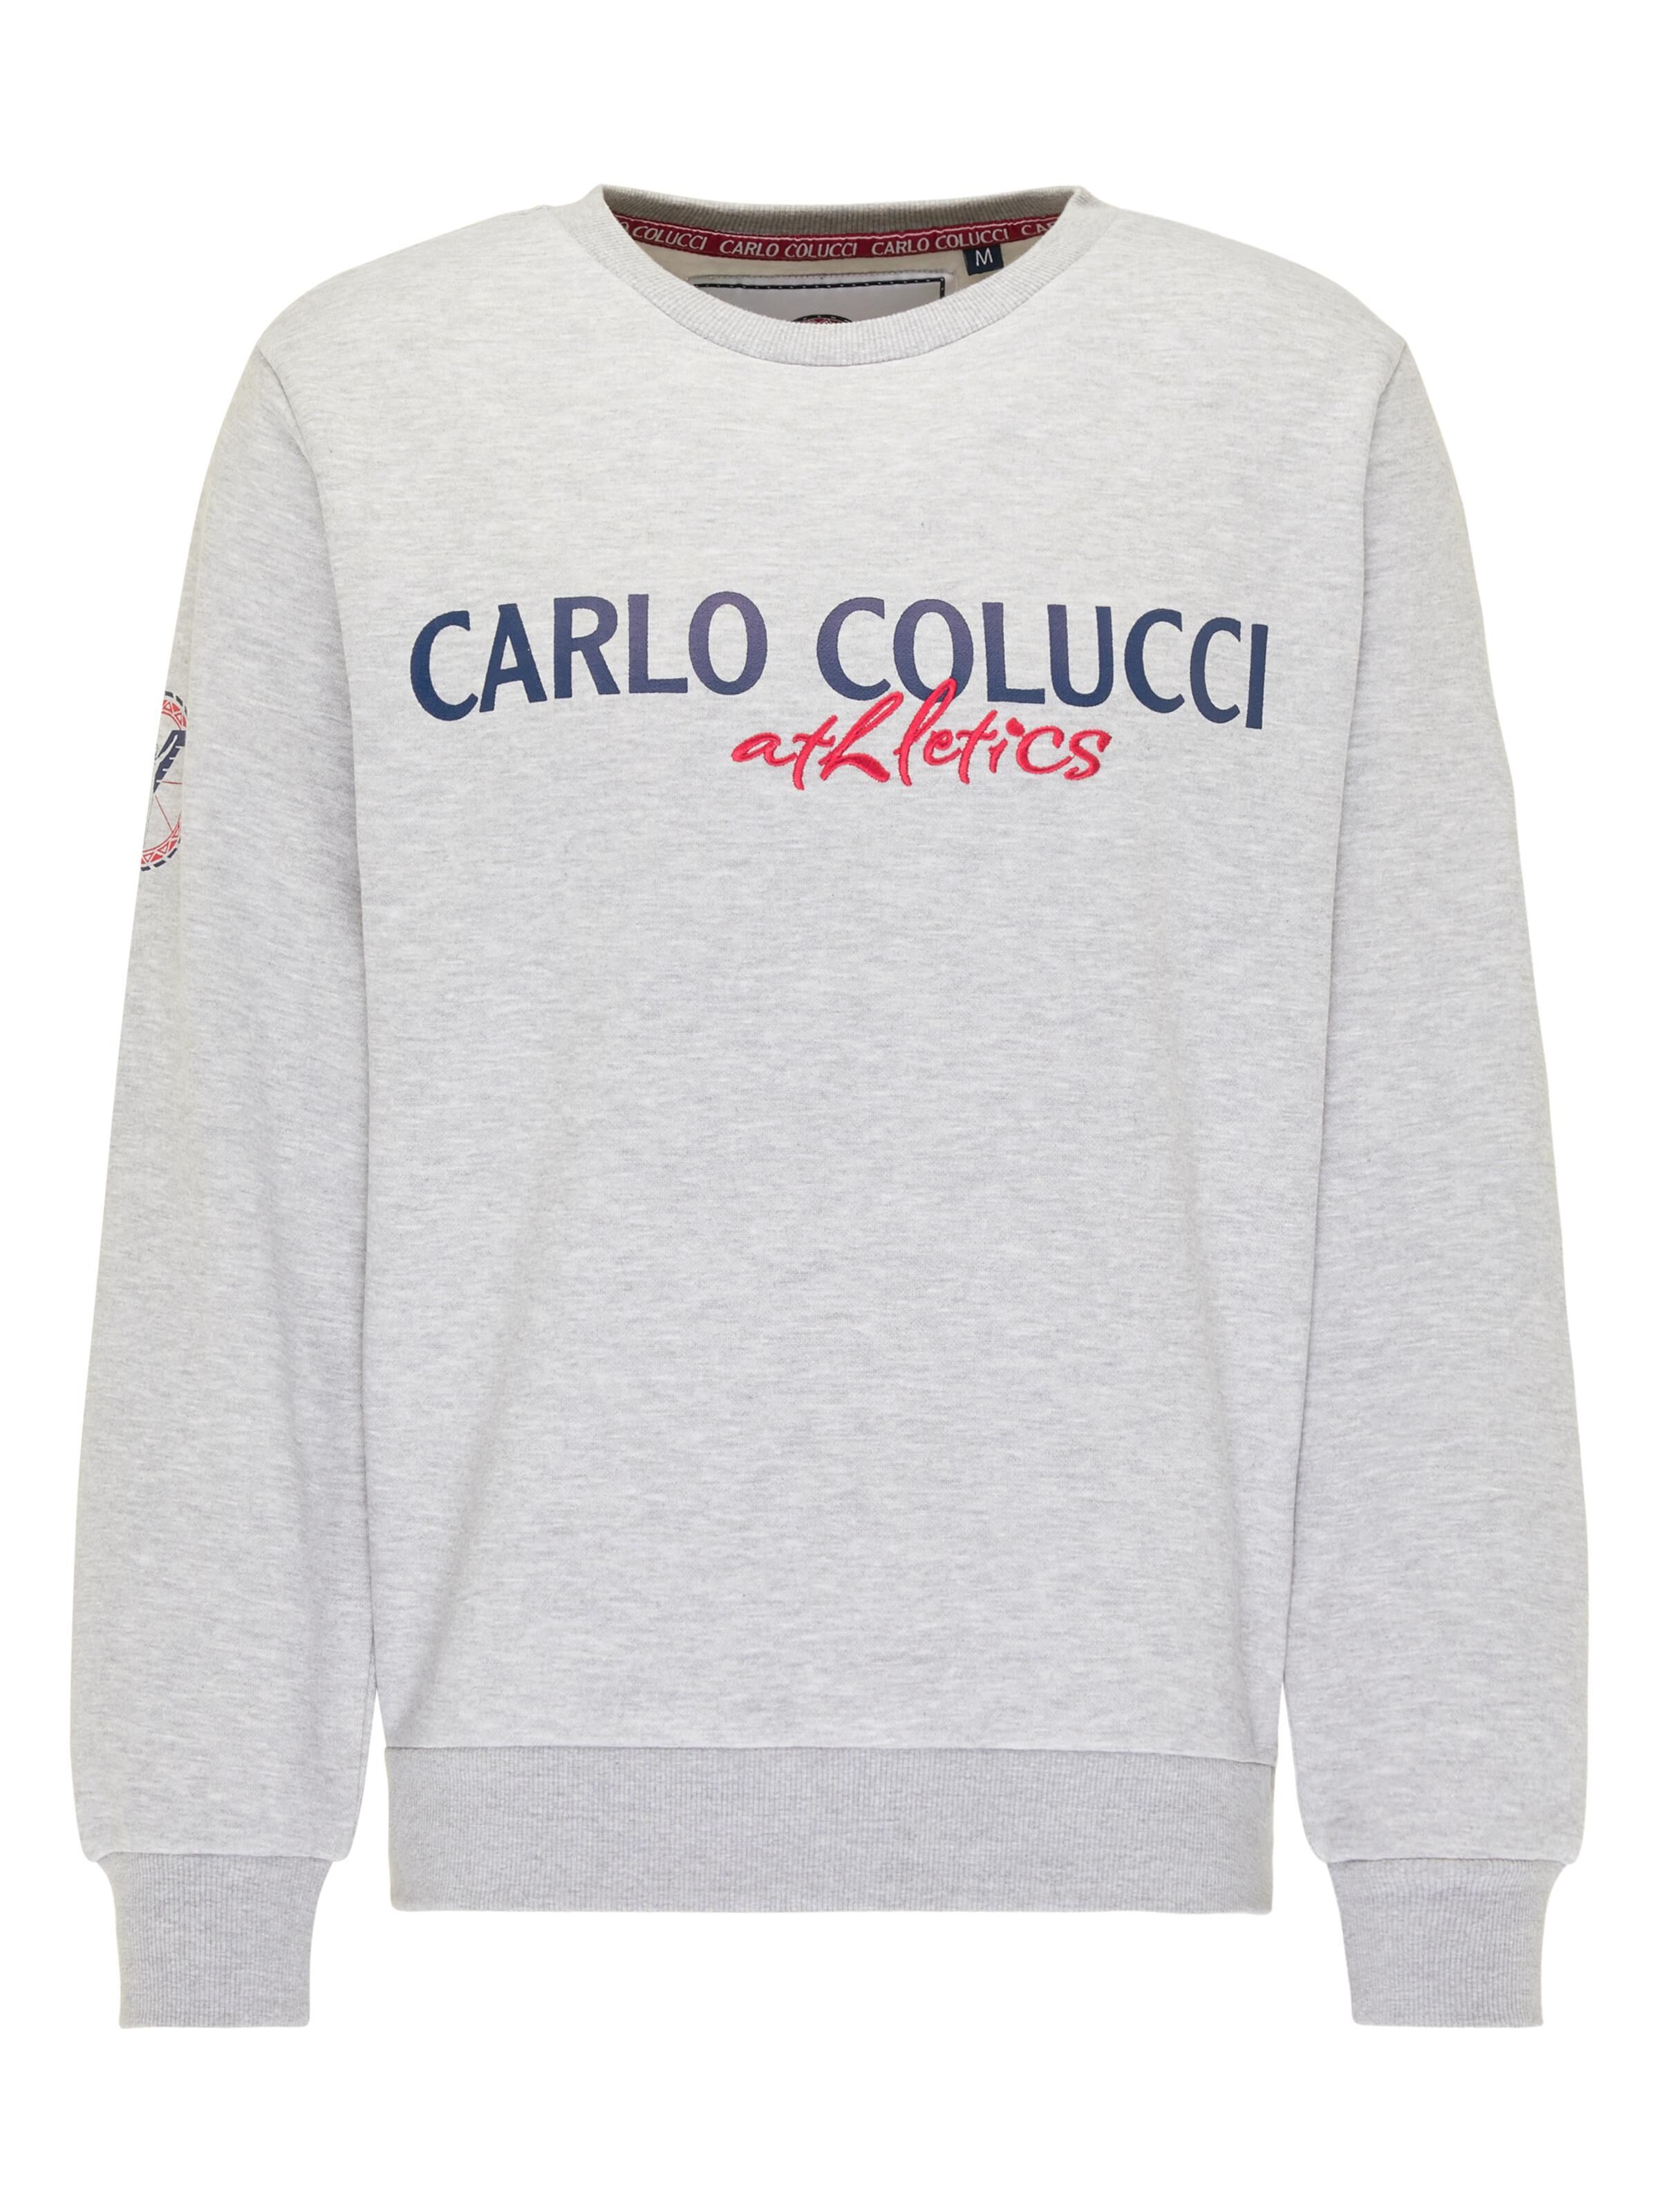 CARLO COLUCCI Atletico Sweatshirt